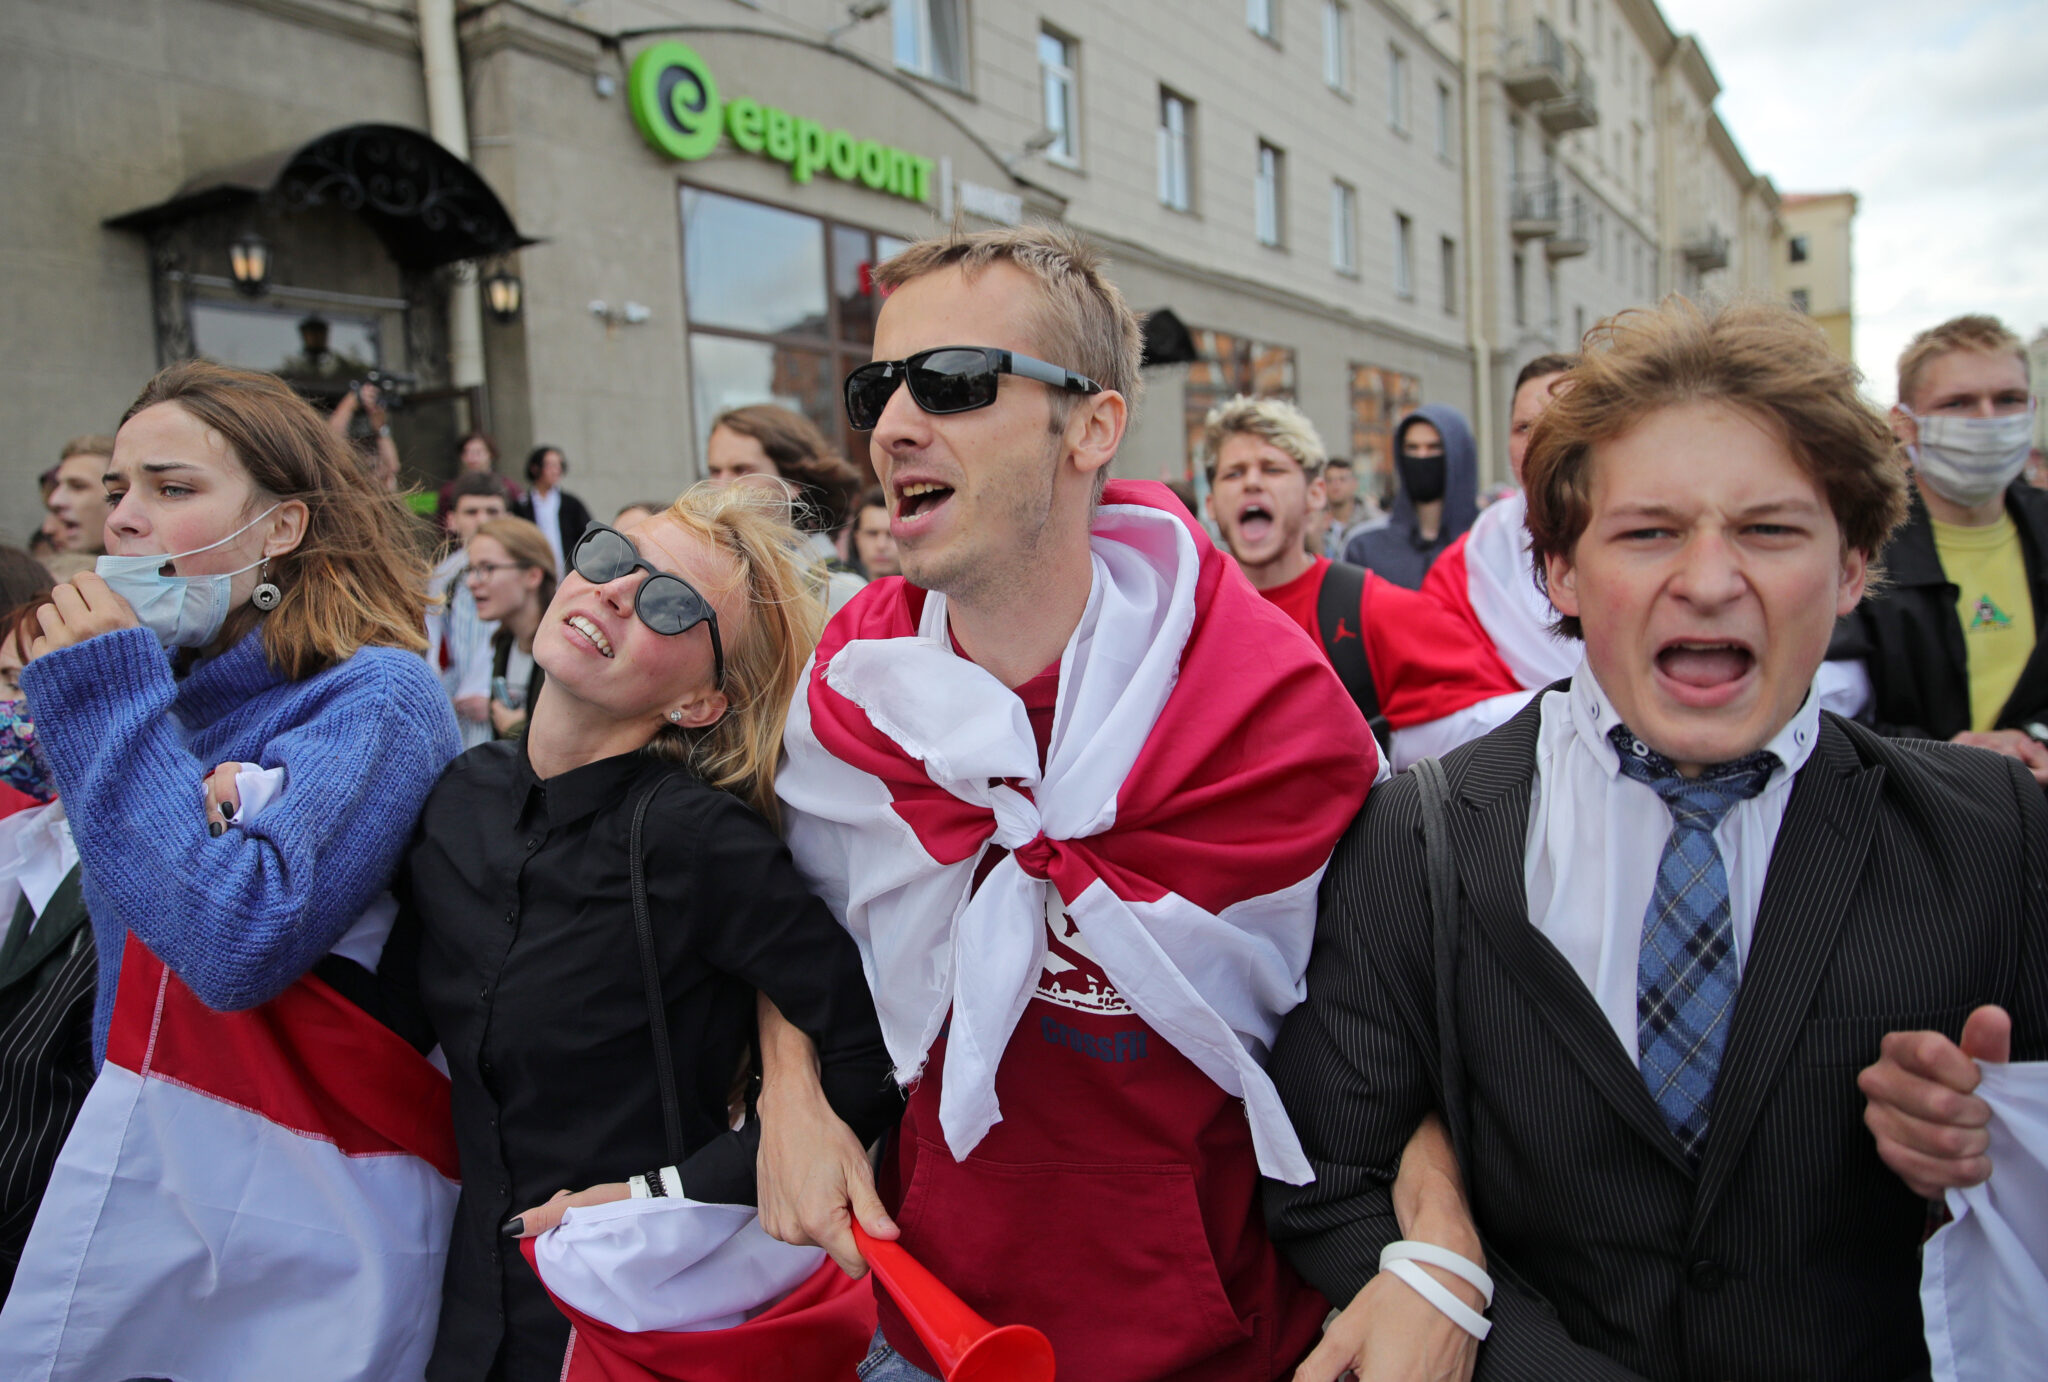 Участники марша скандировали: "Студенты с народом". Фото Sergei Bobylev/TASS/Scanpix/Leta